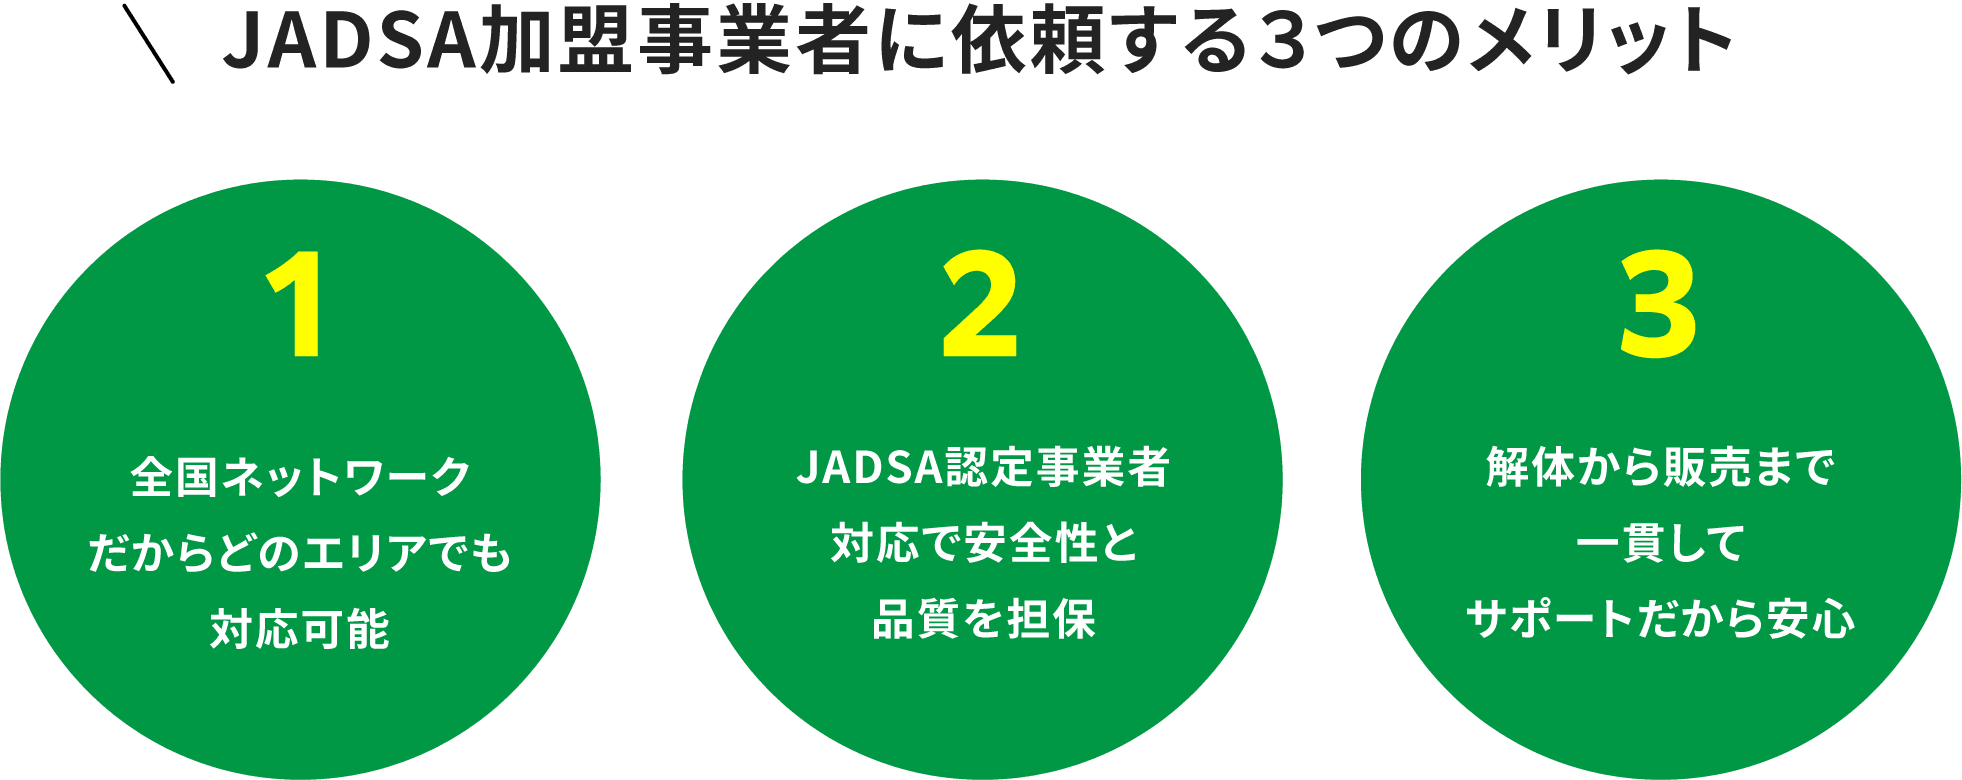 JADSA加盟事業者に依頼する３つのメリット 1.全国ネットワークだからどのエリアでも対応可能 2.JADSA認定事業者対応で安全性と品質を担保 3.解体から販売まで一貫してサポートだから安心